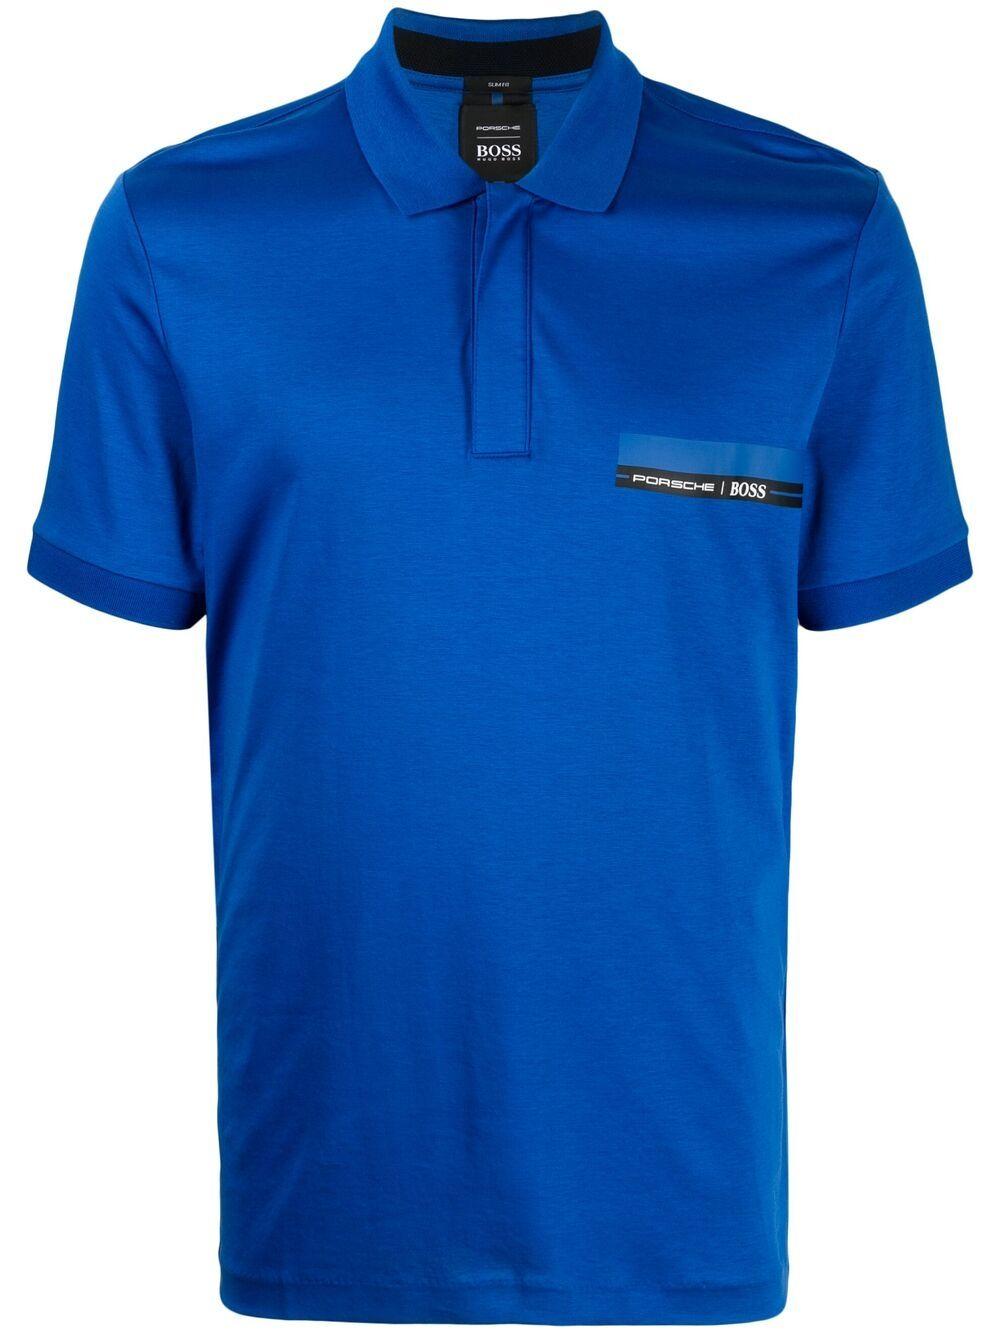 BOSS by HUGO BOSS X Porsche Logo-print Polo Shirt in Blue for Men | Lyst